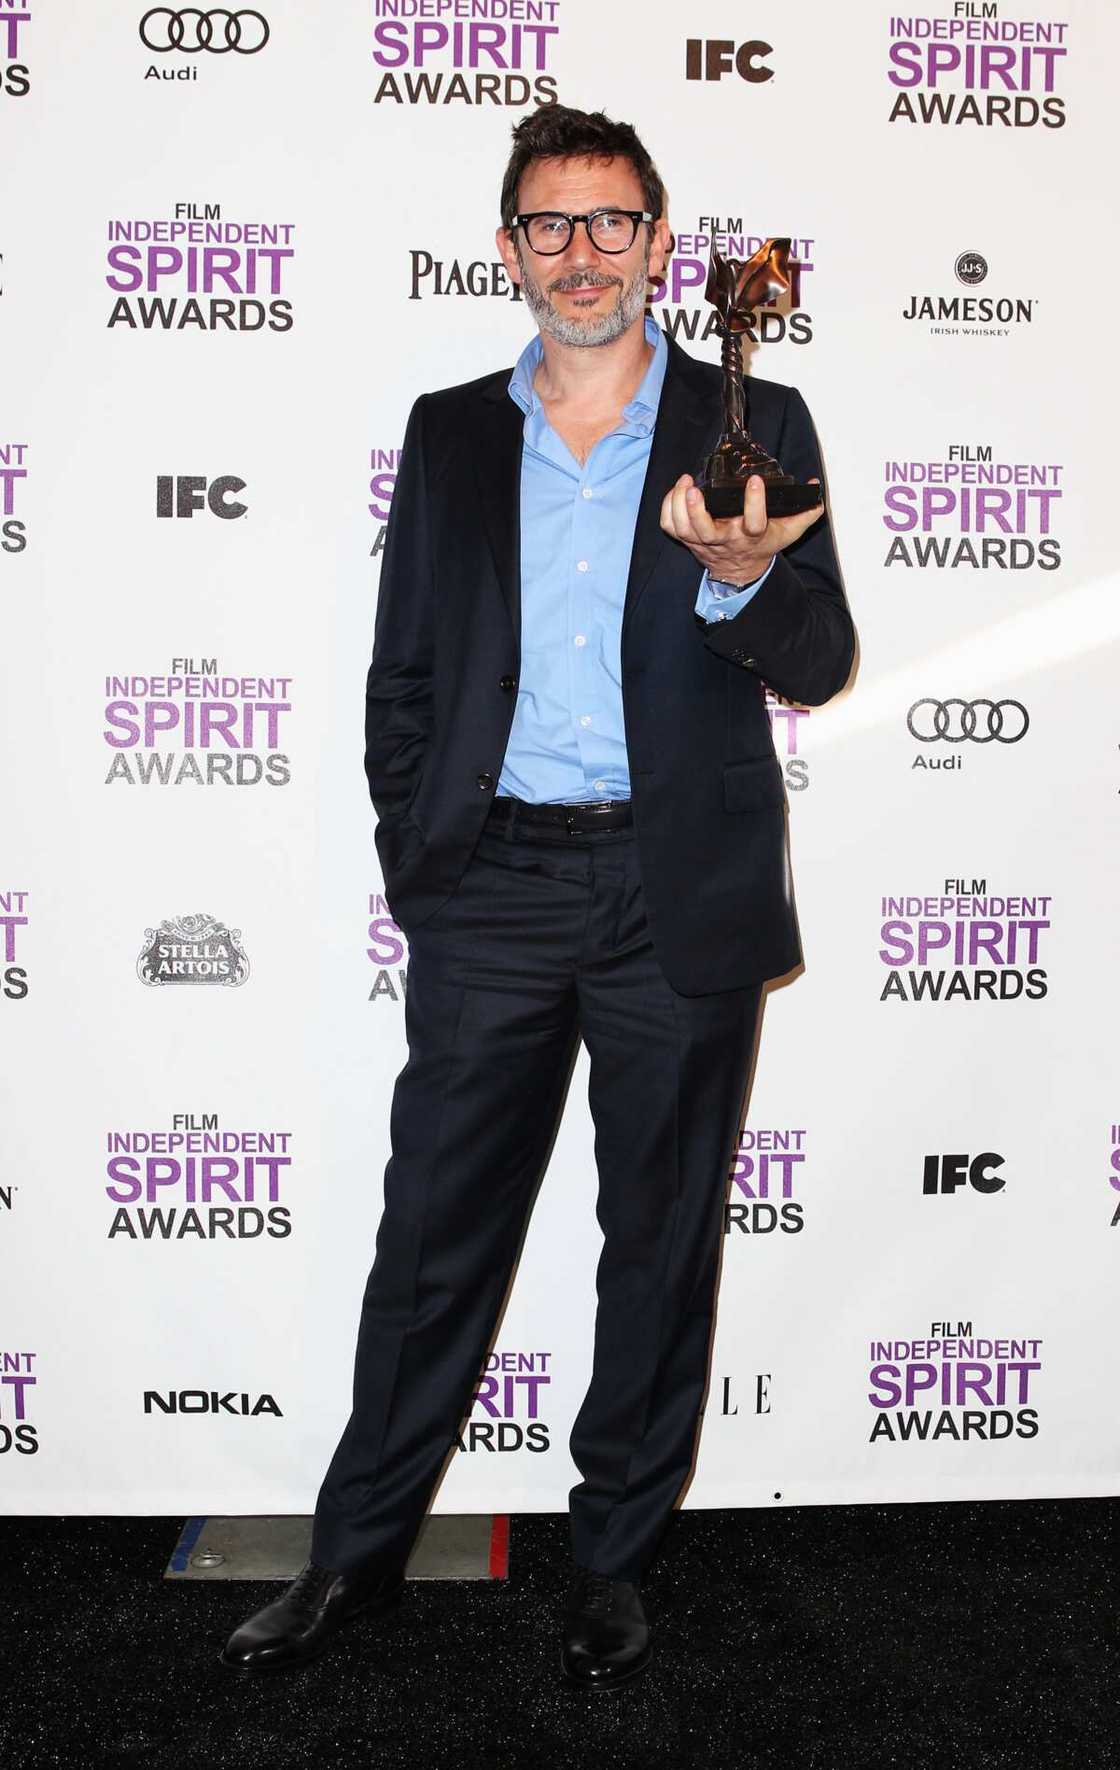 Michel Hazanavicius pose avec le prix du meilleur long métrage pour "The Artist" dans la salle de presse aux Film Independent Spirit Awards 2012 à la jetée de Santa Monica le 25 février 2012 à Santa Monica, en Californie. (Photo de Joe Scarnici/WireImage)